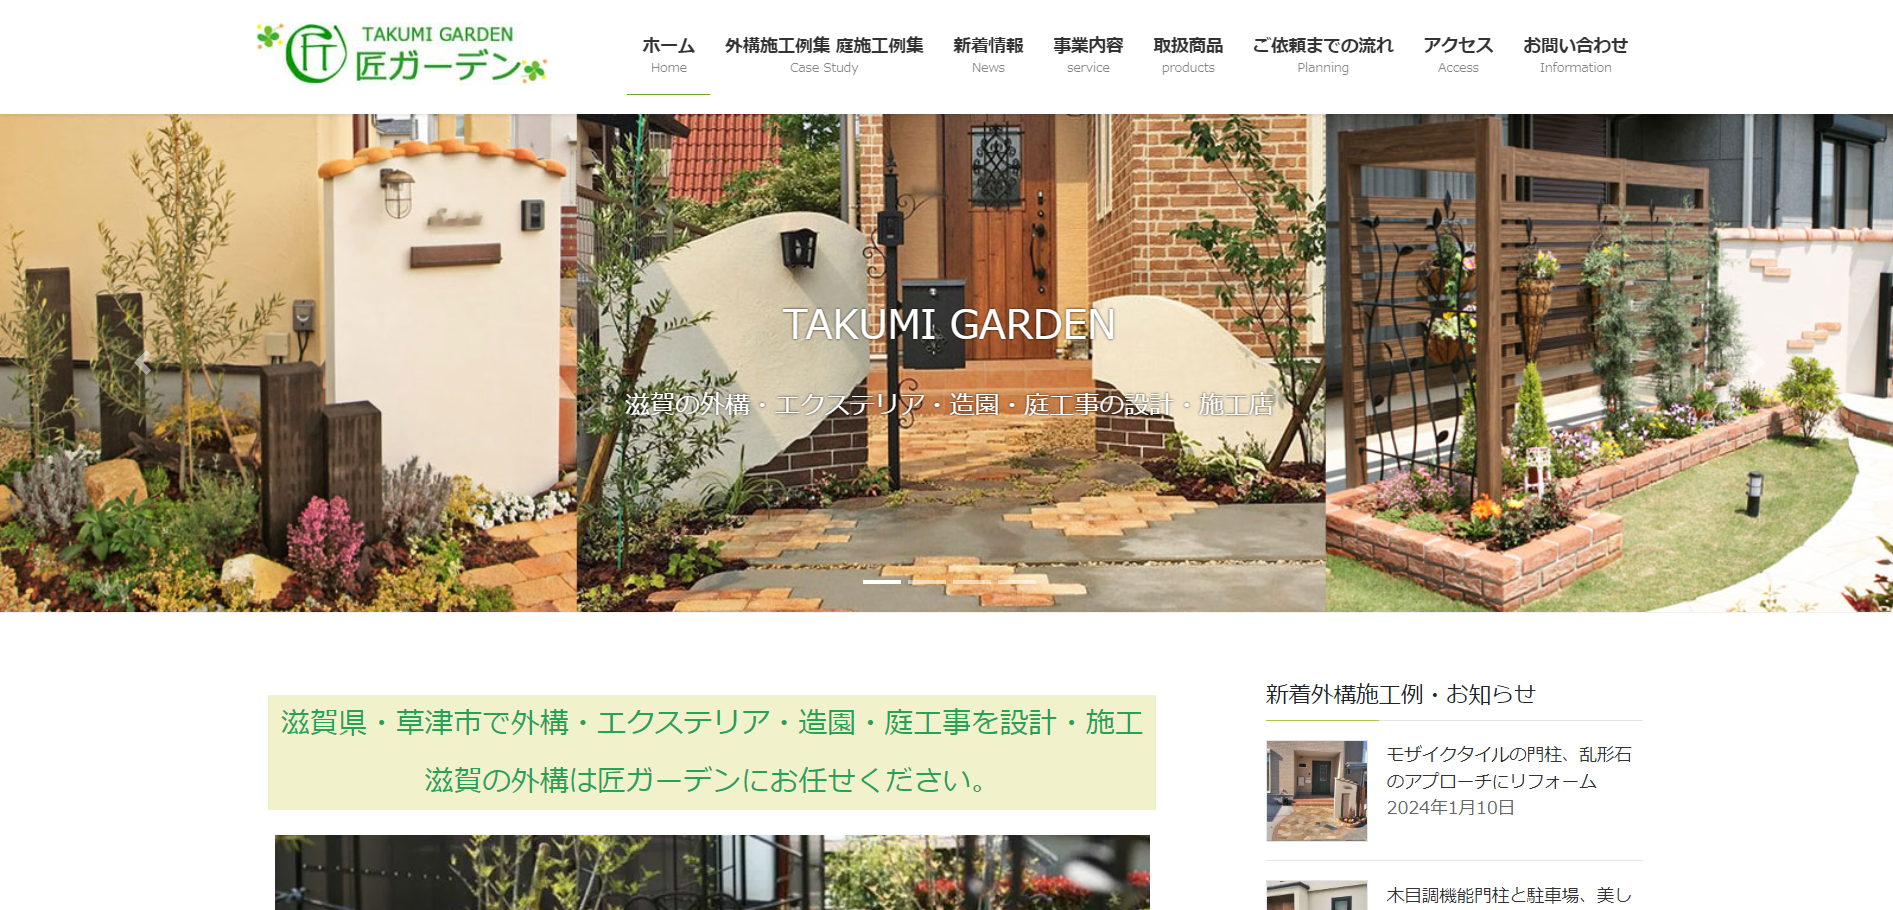 滋賀県で評判のおすすめ外構業者ランキング 第10位 匠ガーデン